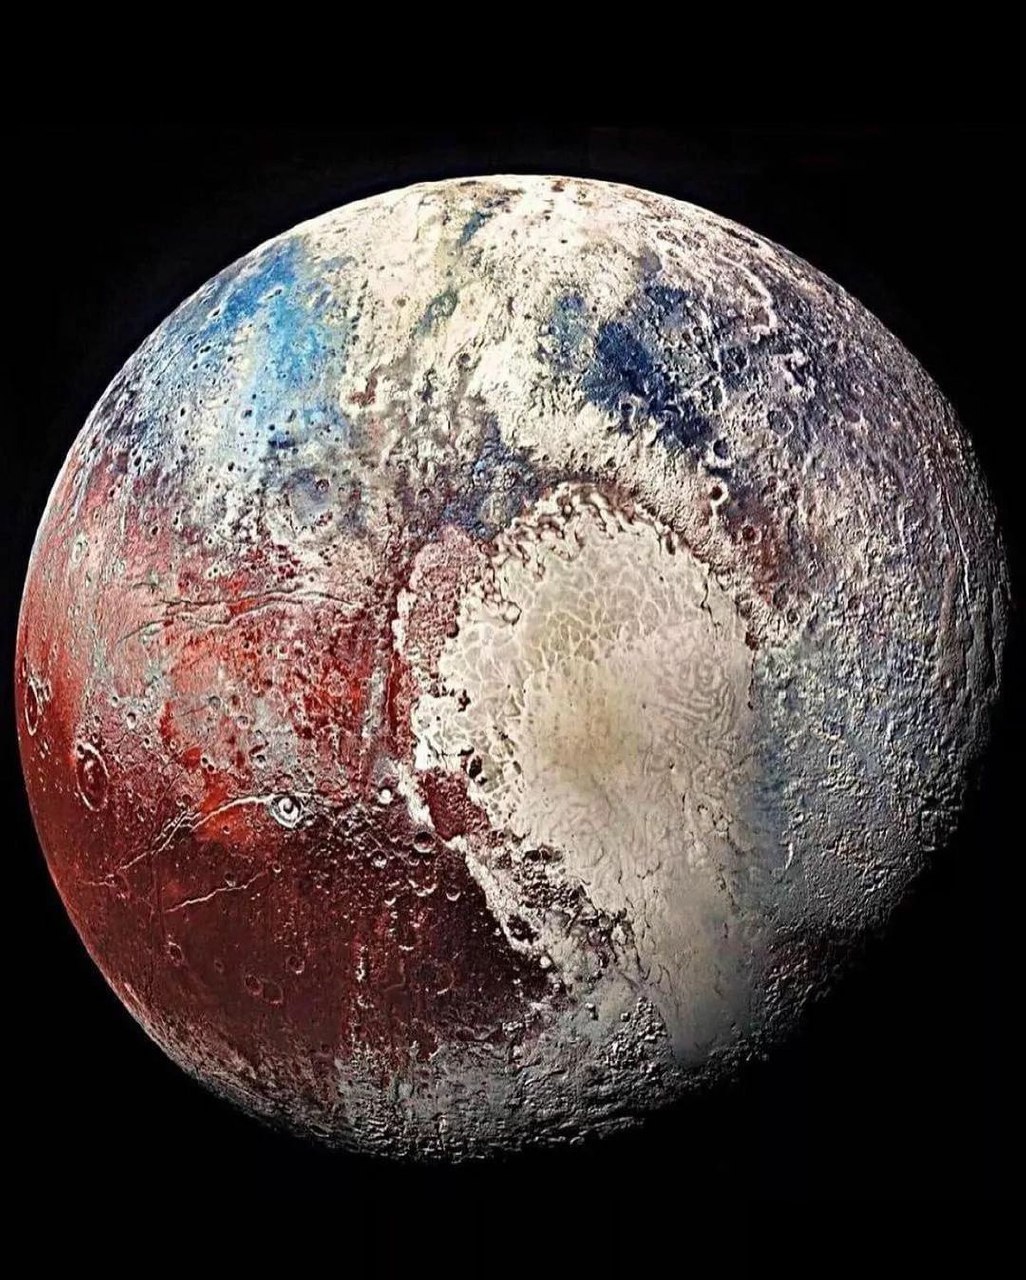 Плутон - малая планета Солнечной системы